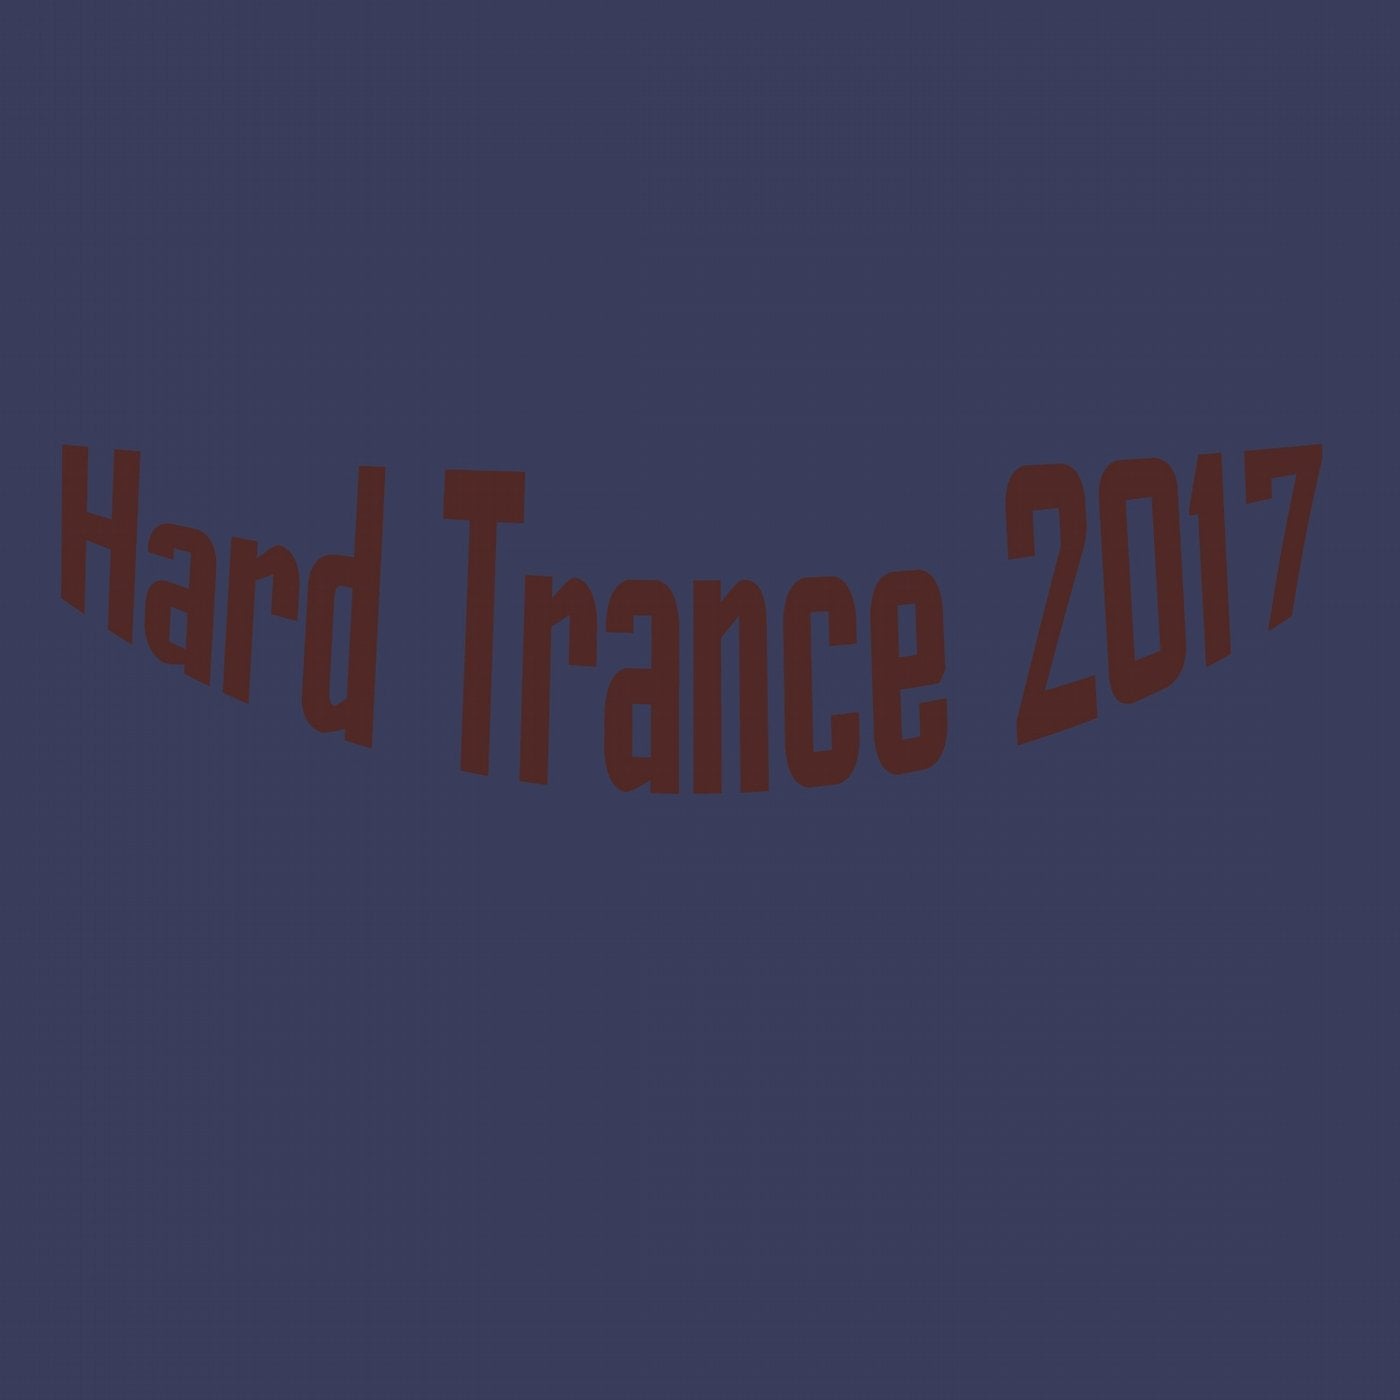 Hard Trance 2017